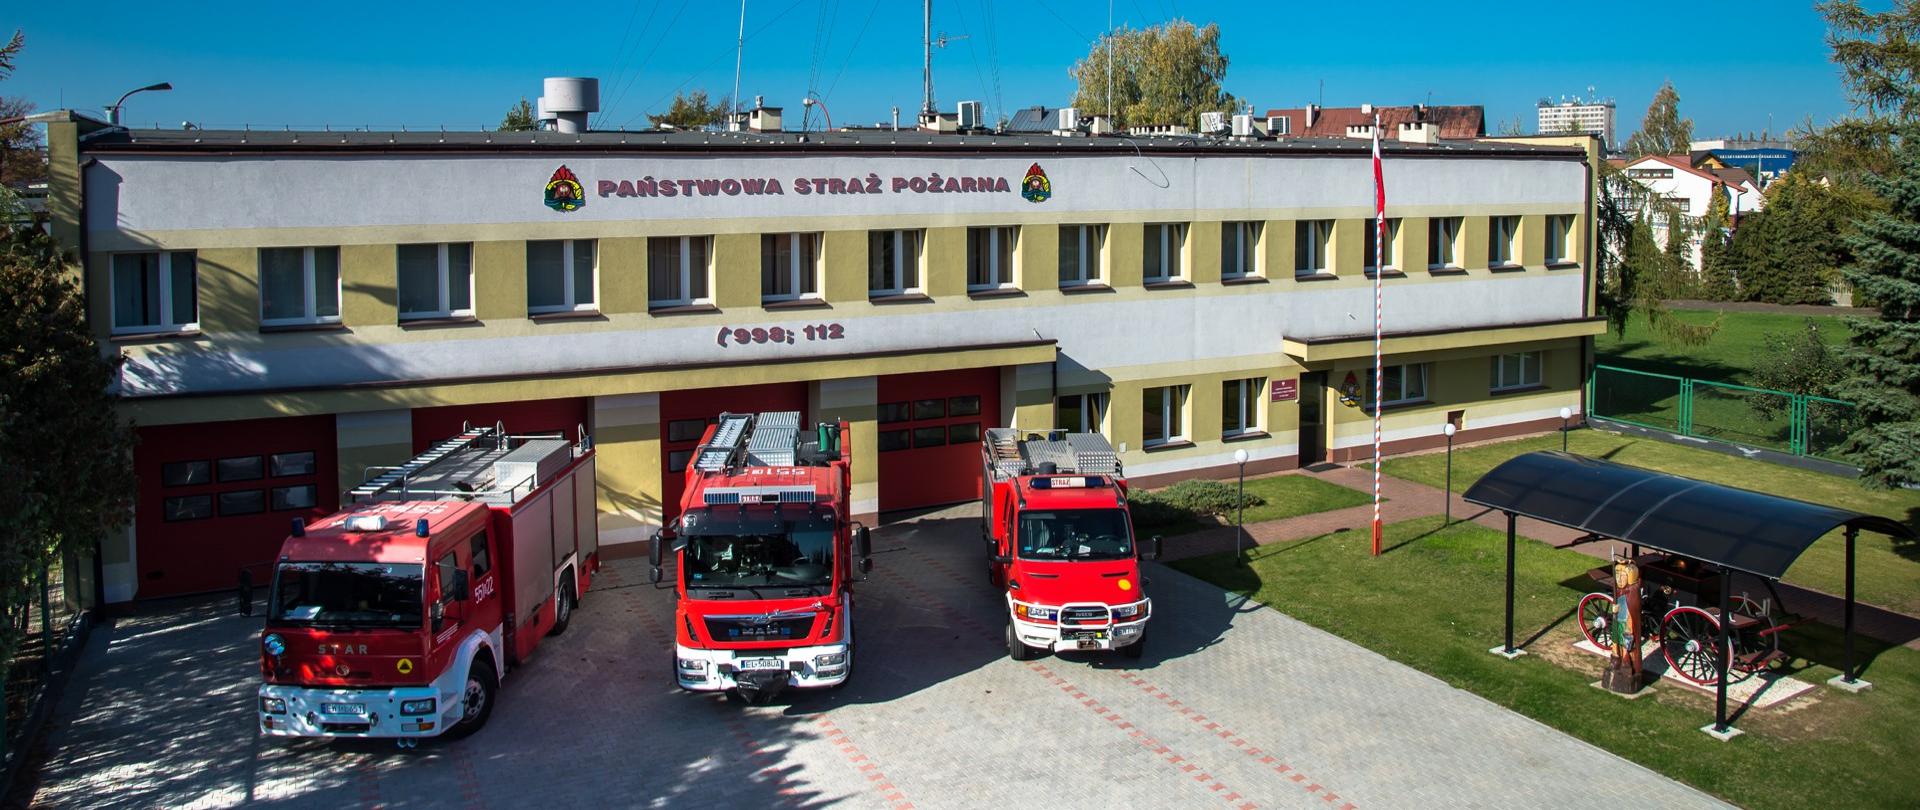 Zdjęcie przedstawia budynek Komendy Powiatowej Państwowej Straży Pożarnej w Wieluniu